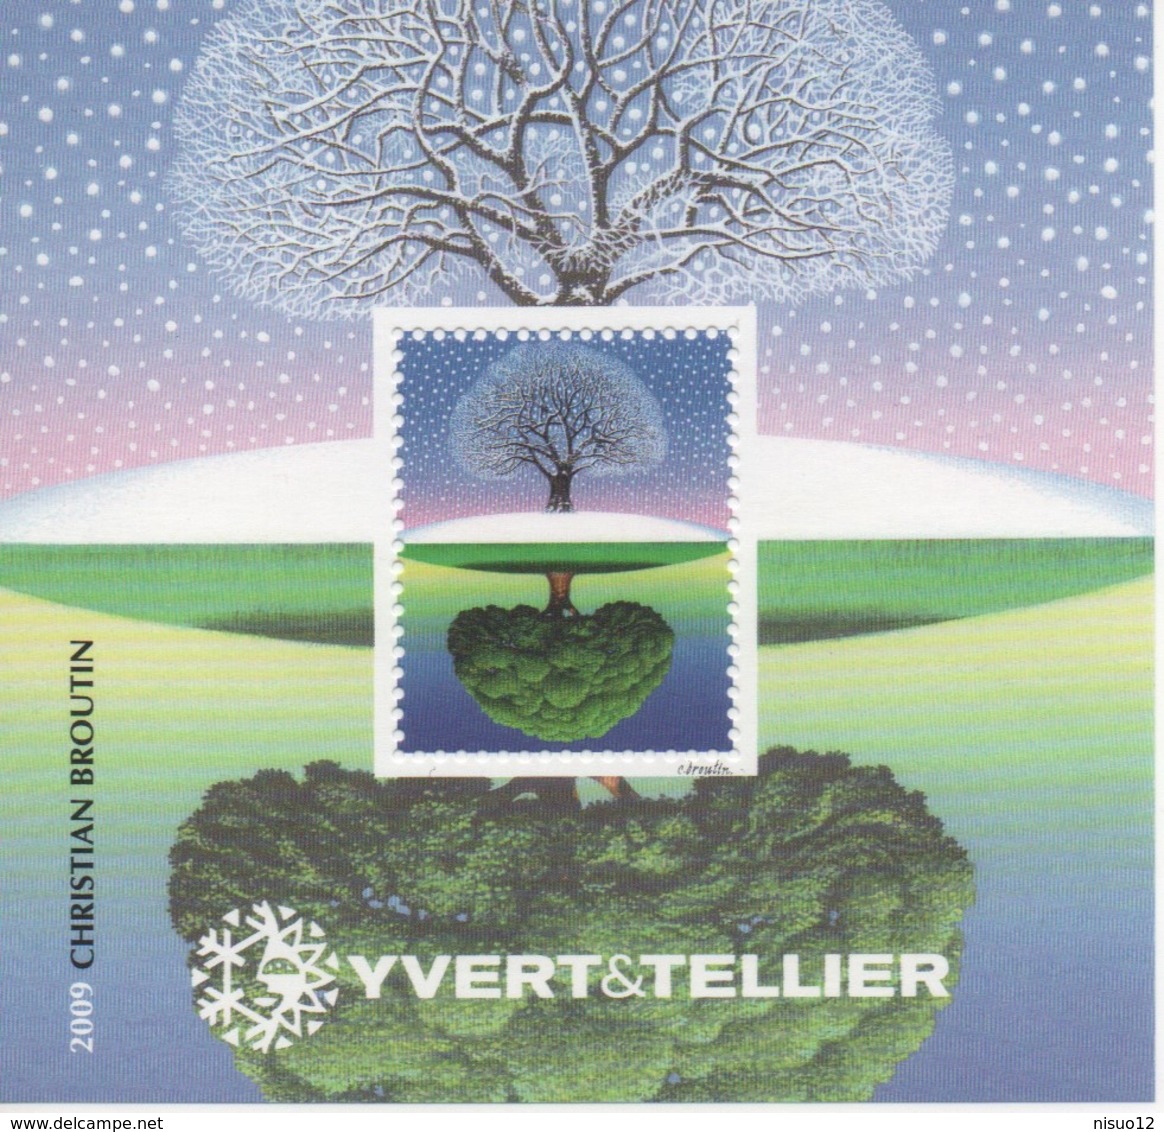 Feuillet Souvenir Yvert & Tellier N°2 - Année 2009 - Blocs Souvenir